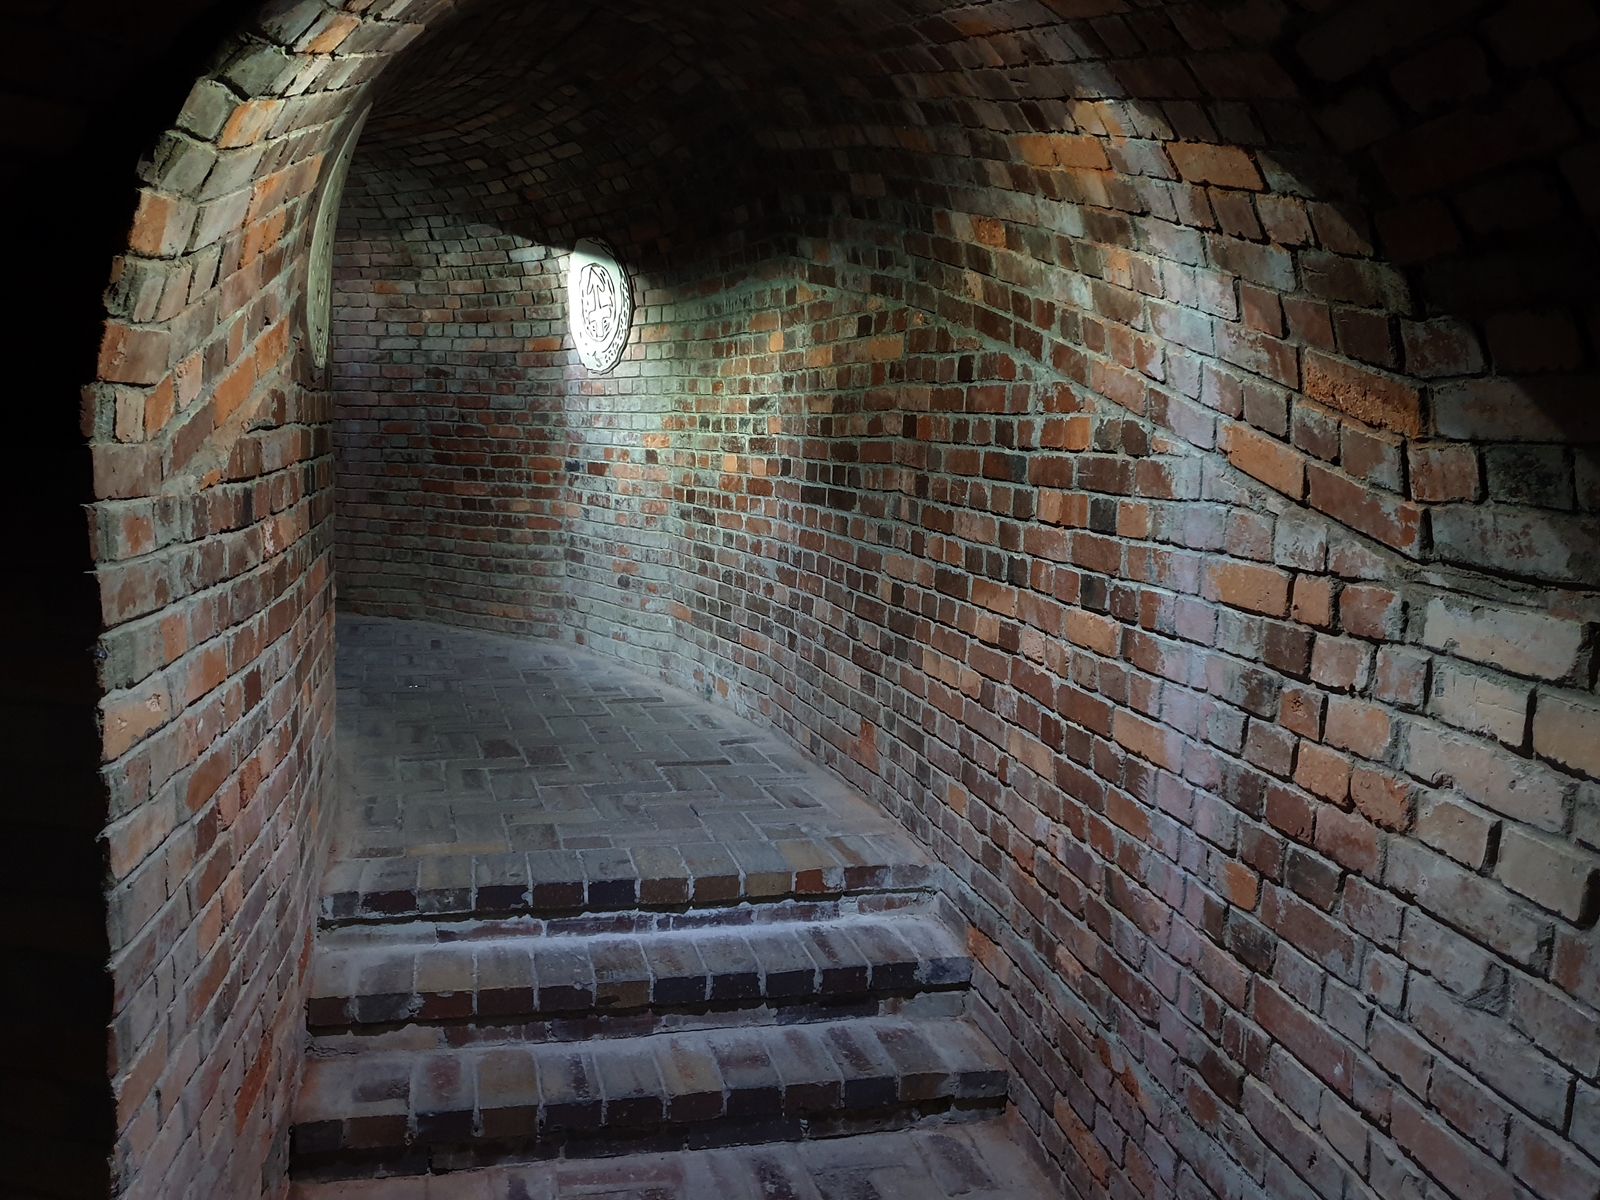 Wnętrze podziemi, ze schodami i ceglastymi ścianami.